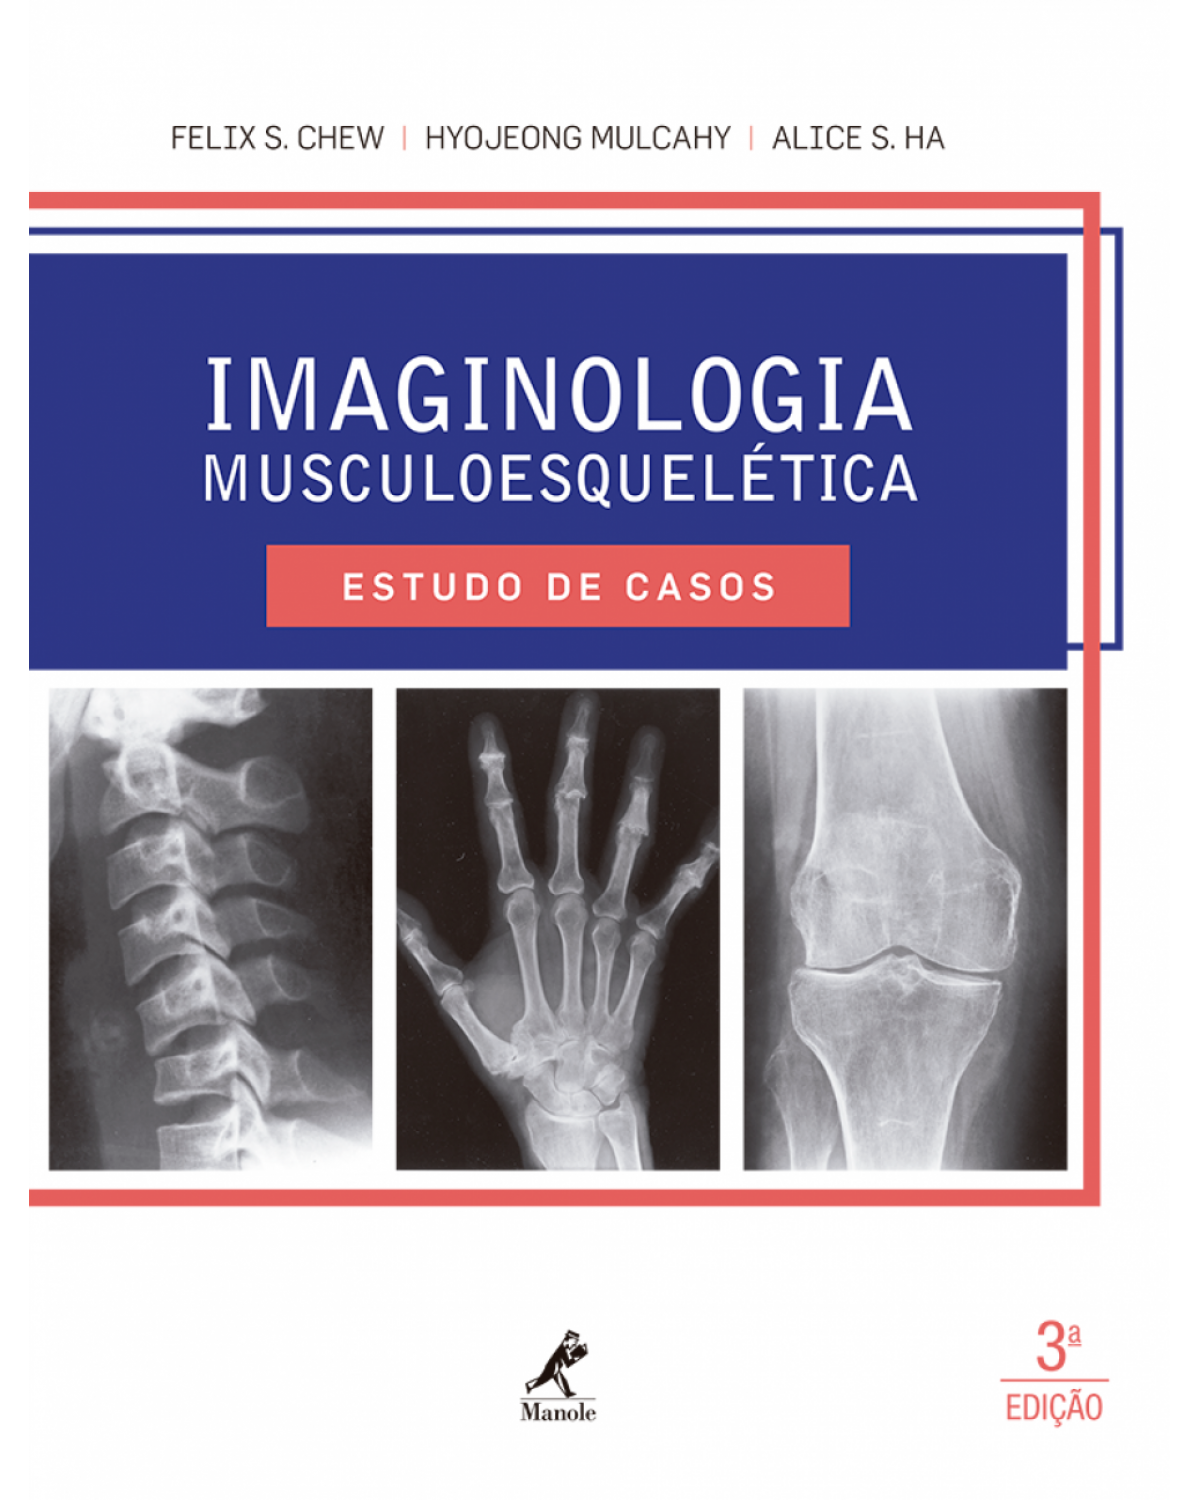 Imaginologia musculoesquelética - Estudo de casos - 3ª Edição | 2016